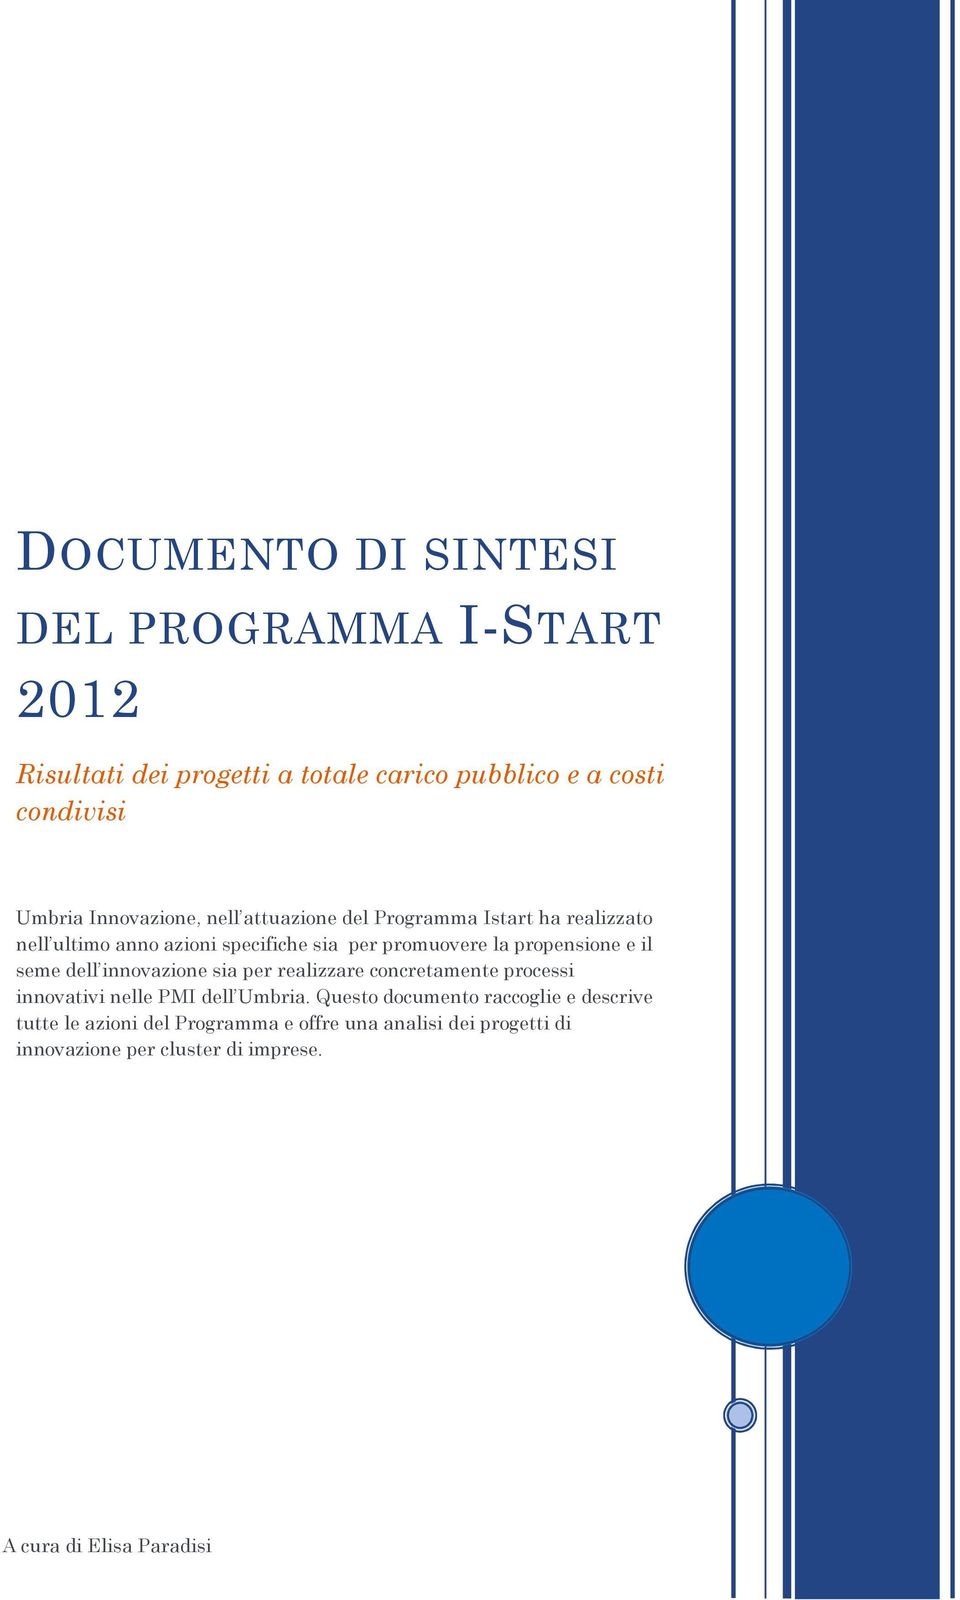 propensione e il seme dell innovazione sia per realizzare concretamente processi innovativi nelle PMI dell Umbria.